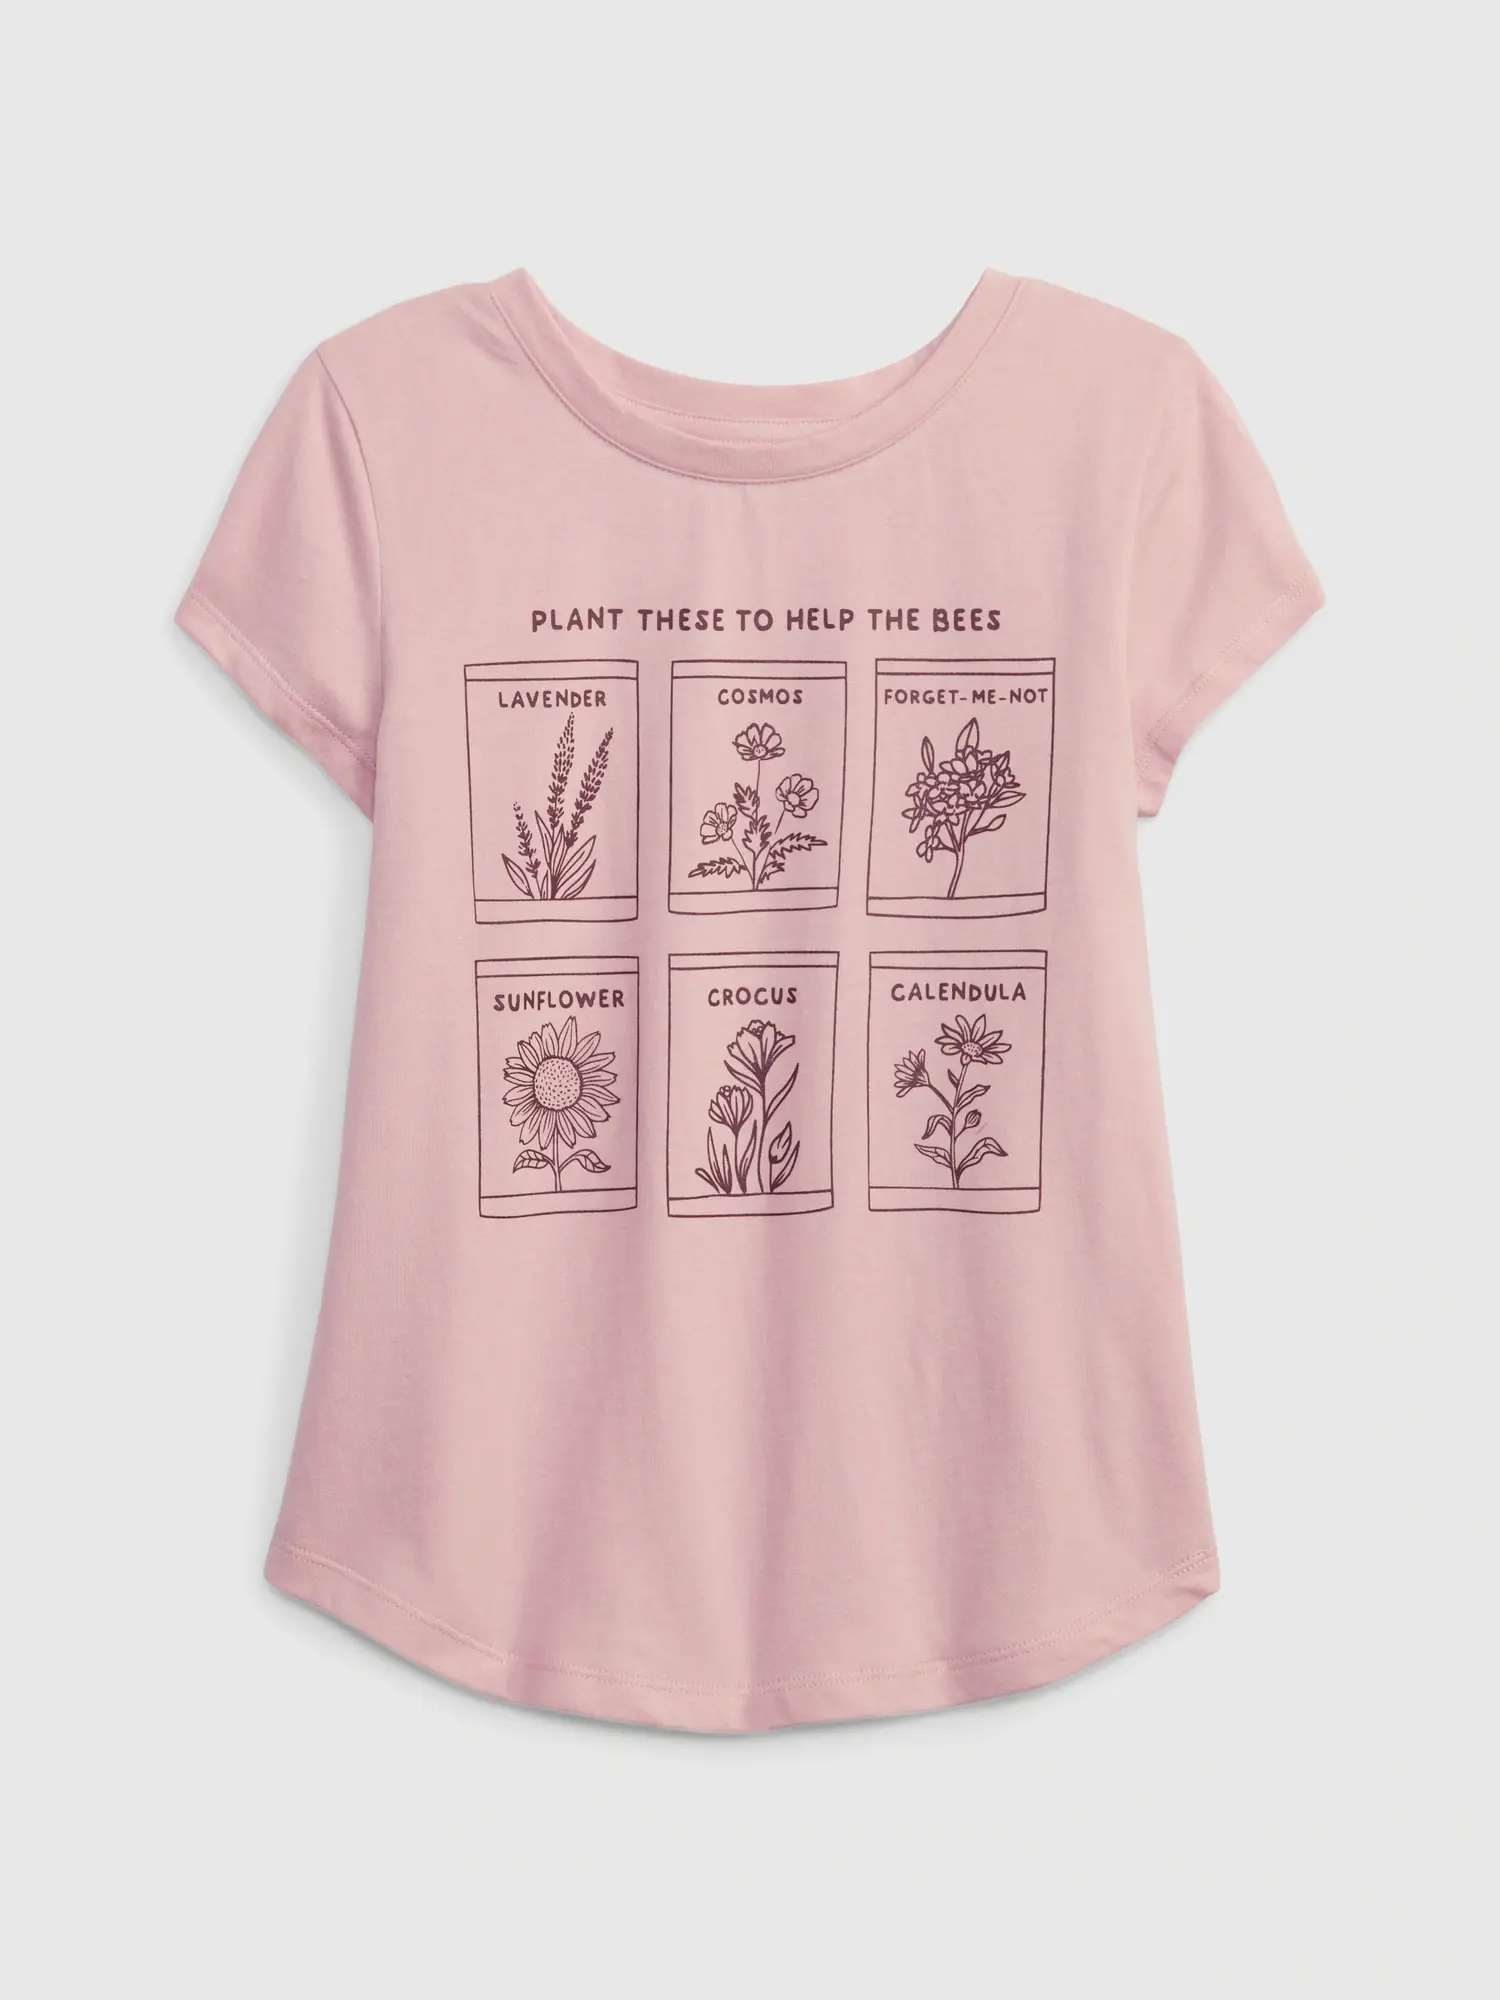 Gap Kids 100% Organic Cotton Graphic T-Shirt pink. 1